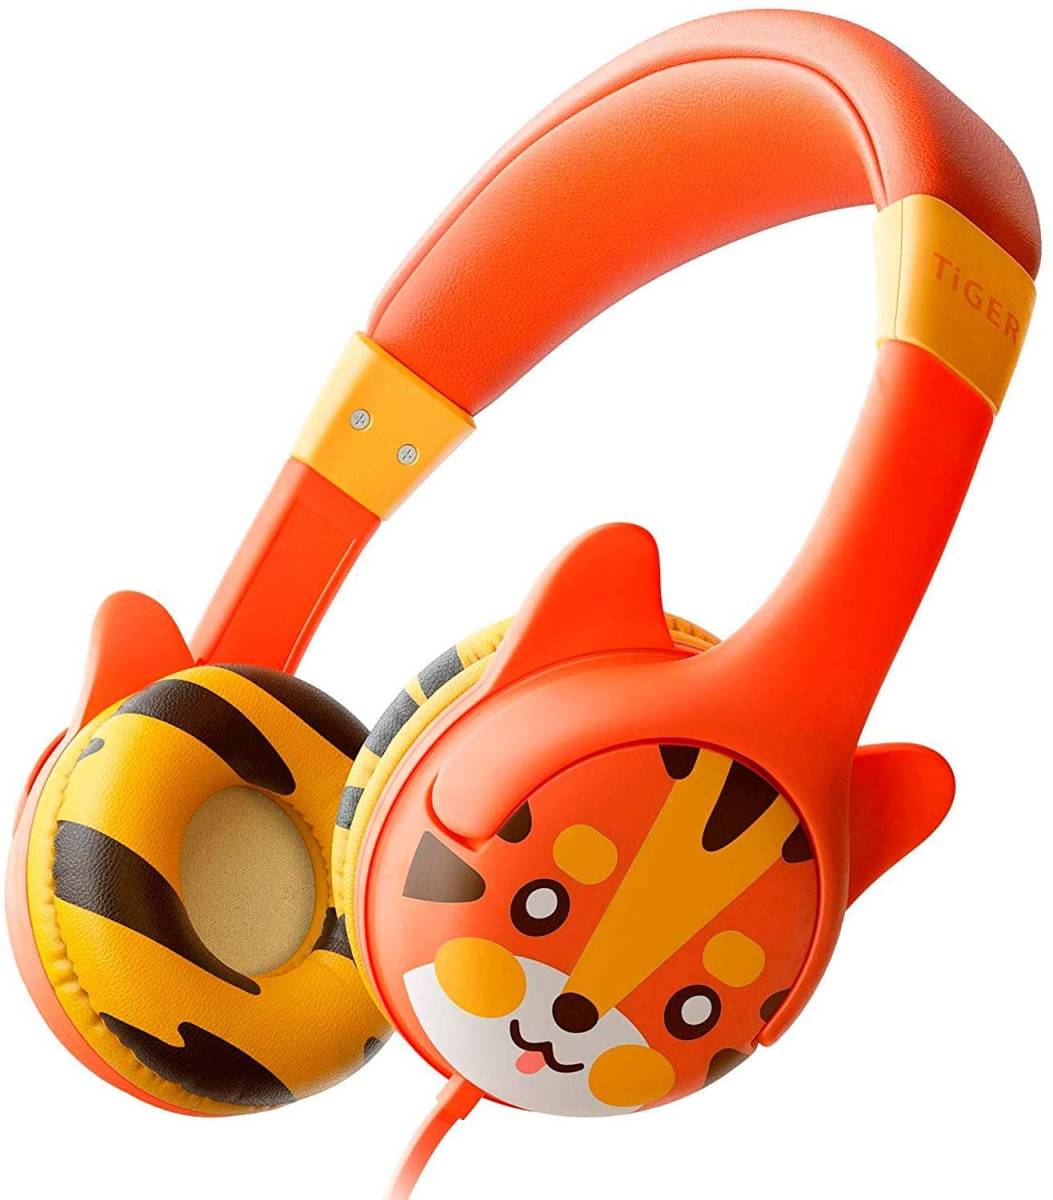 KidRox Tiger-Ear キッズ用ヘッドホン 85dB 音量制限 調節可能で安全な聴覚(中古品)